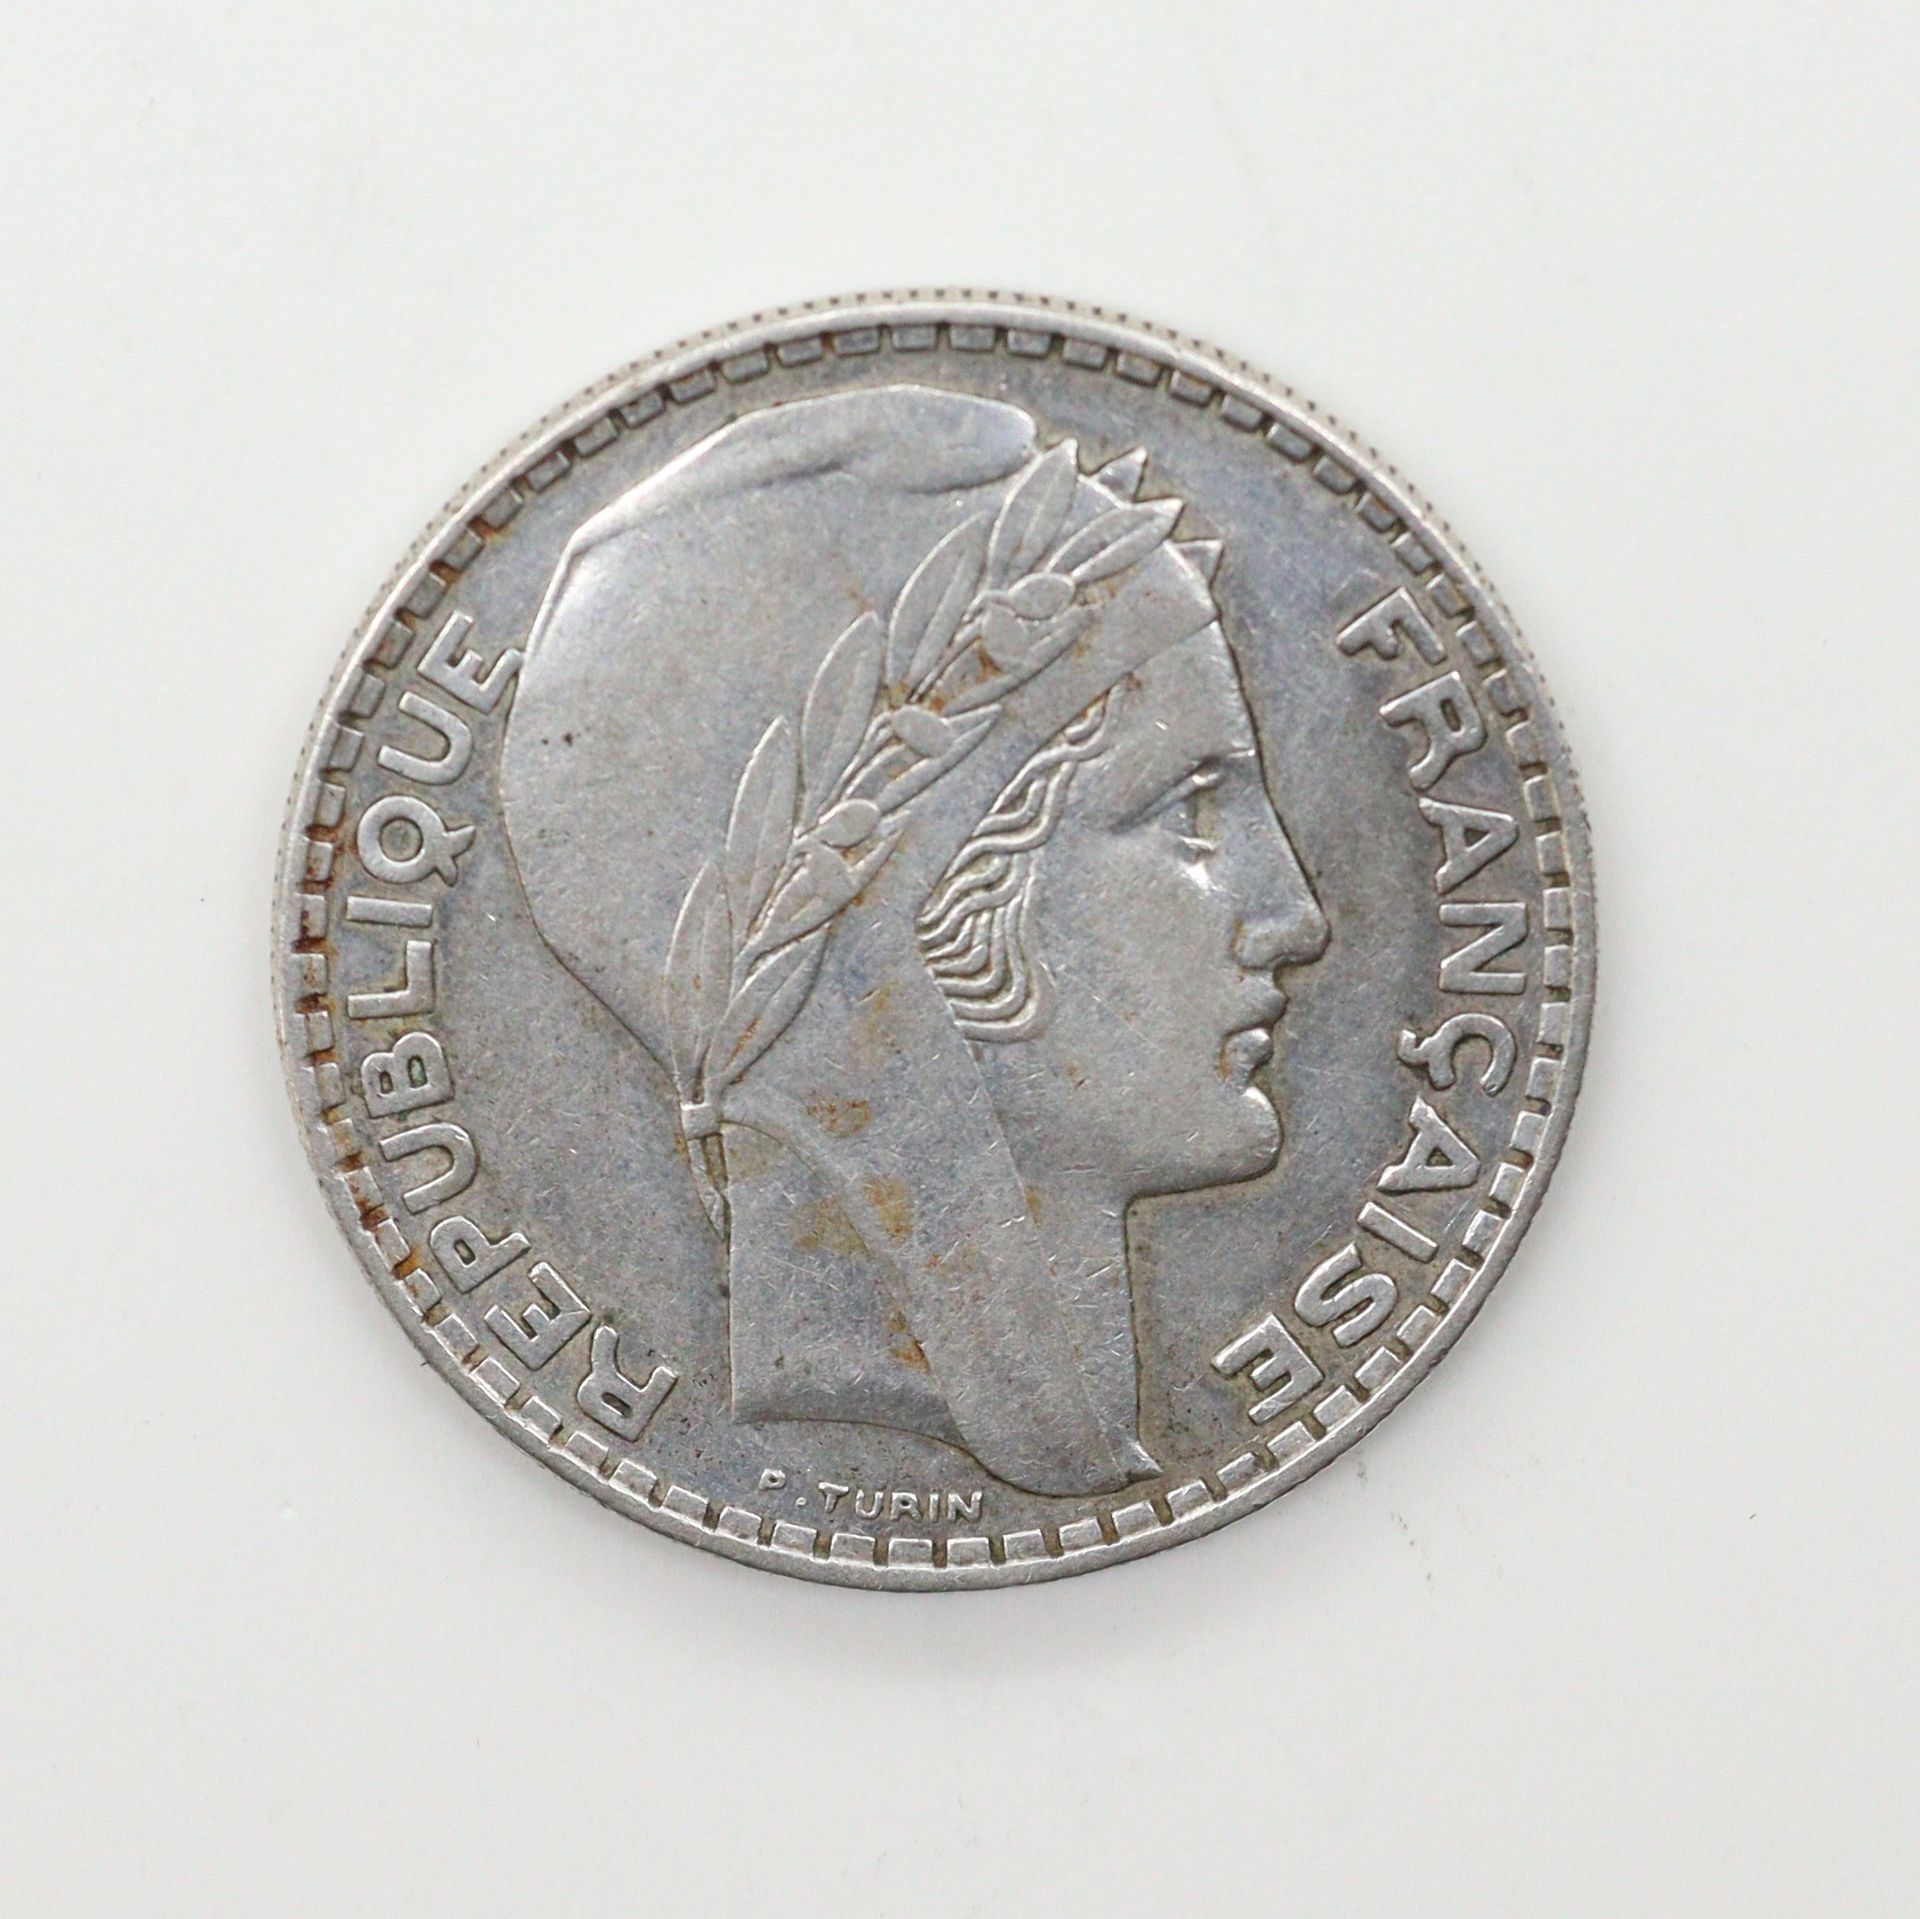 Null 法国

第三共和国

都灵1936年刻制的20法郎银币

法郎：400

几乎是TTB